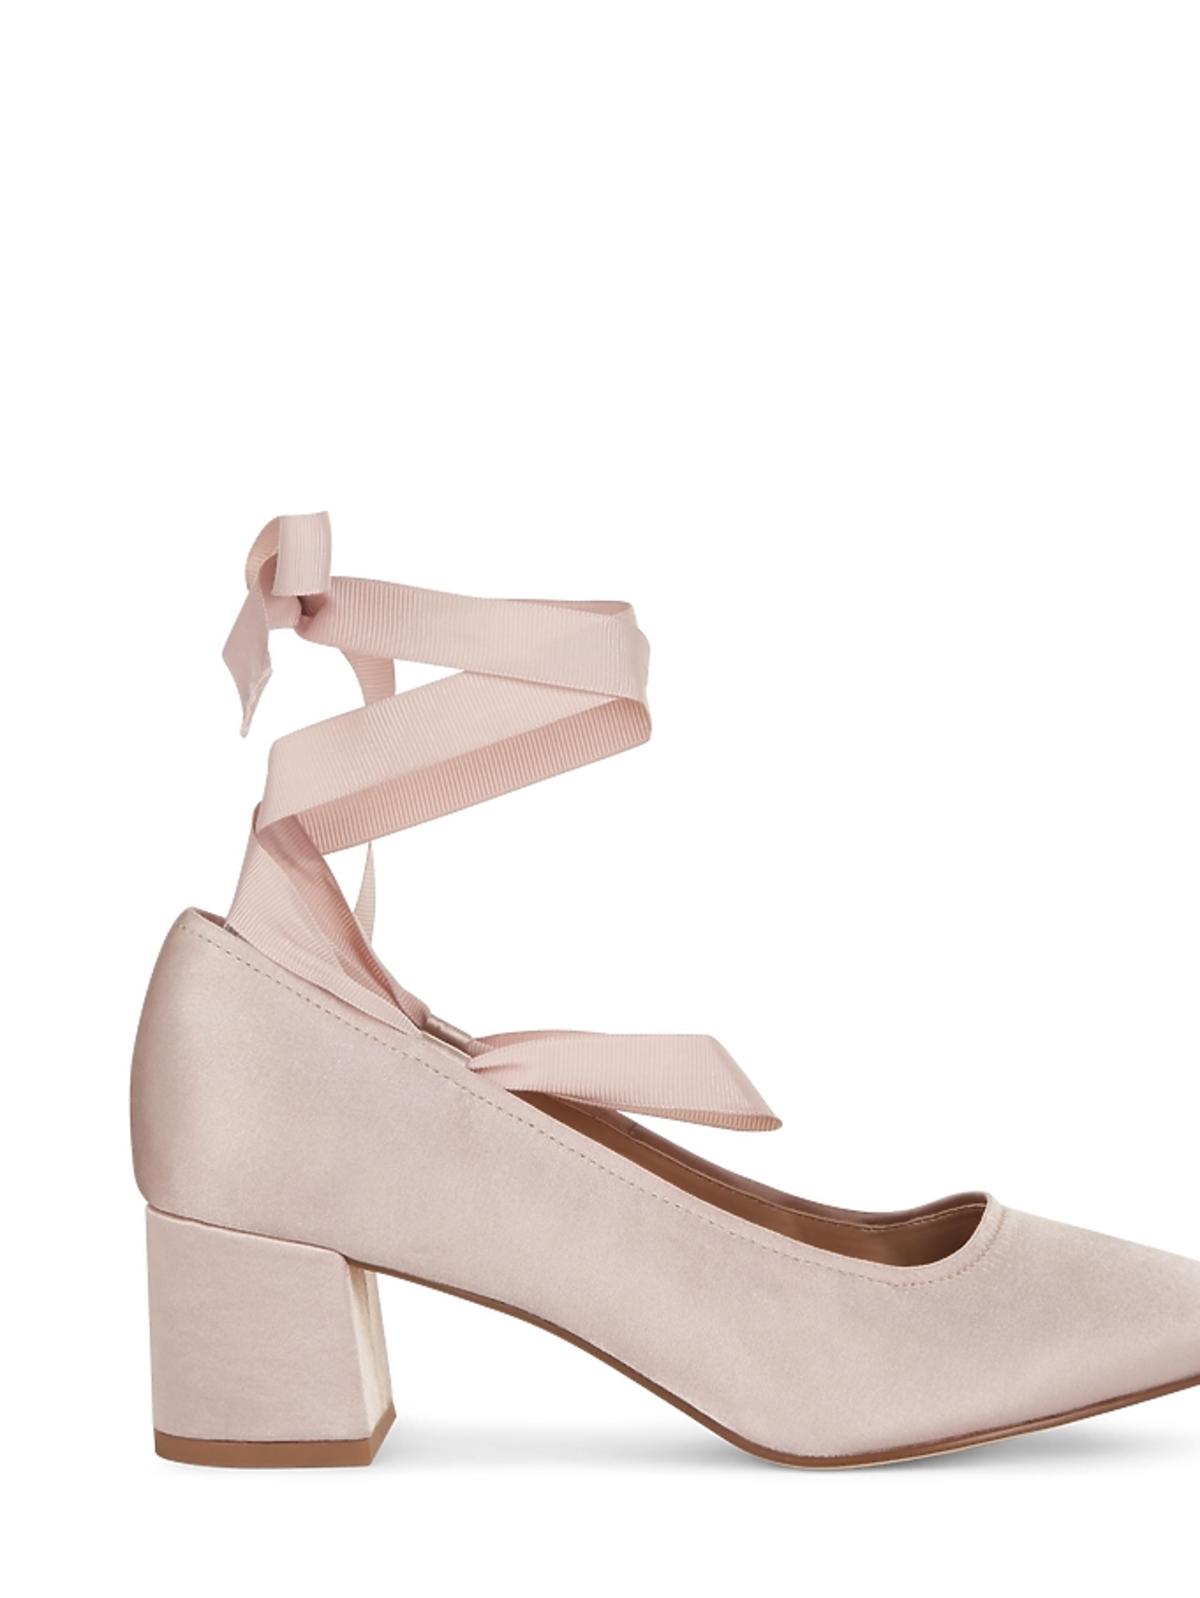 Tanie buty na studniówkę 2017 Zara Reserved H&M wyprzedaż, na niskim obcasie wiązane New Look